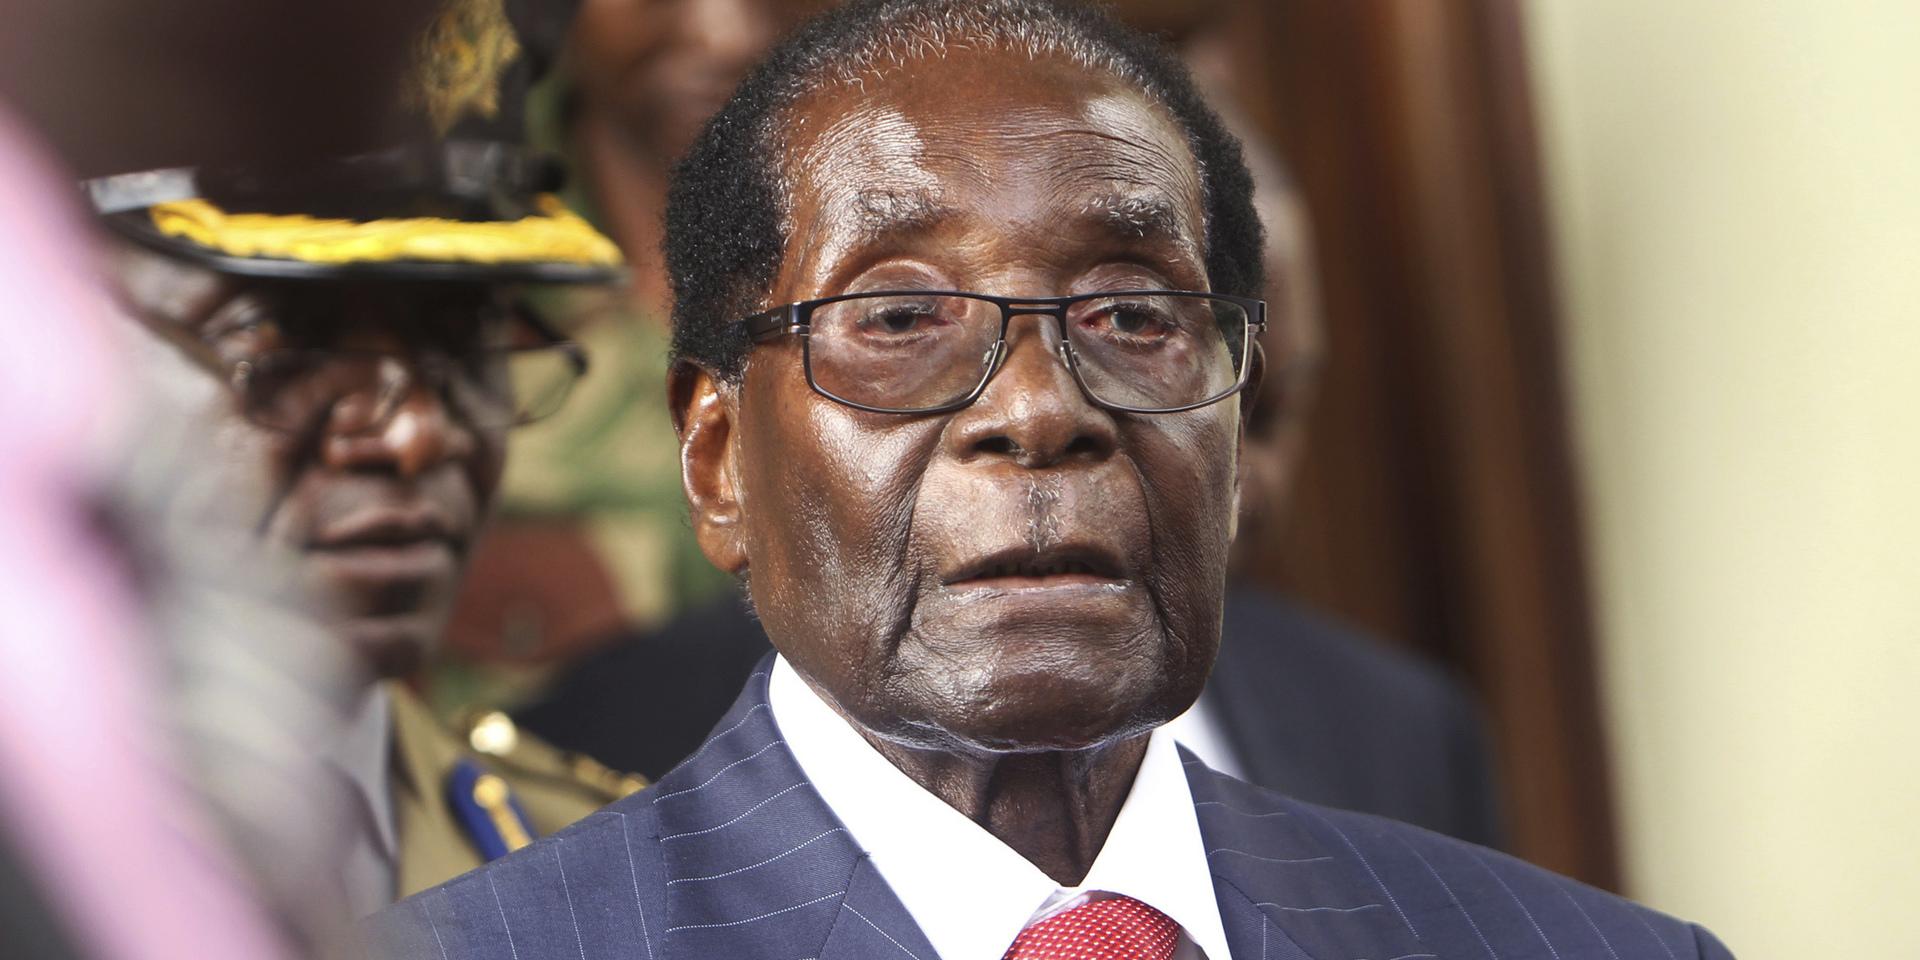 Robert Mugabe kommer att bli ihågkommen för sin roll i Zimbabwes frigörelse från kolonialstyre, men också för bristen på demokratisk utveckling och våld, tror Henning Melber.